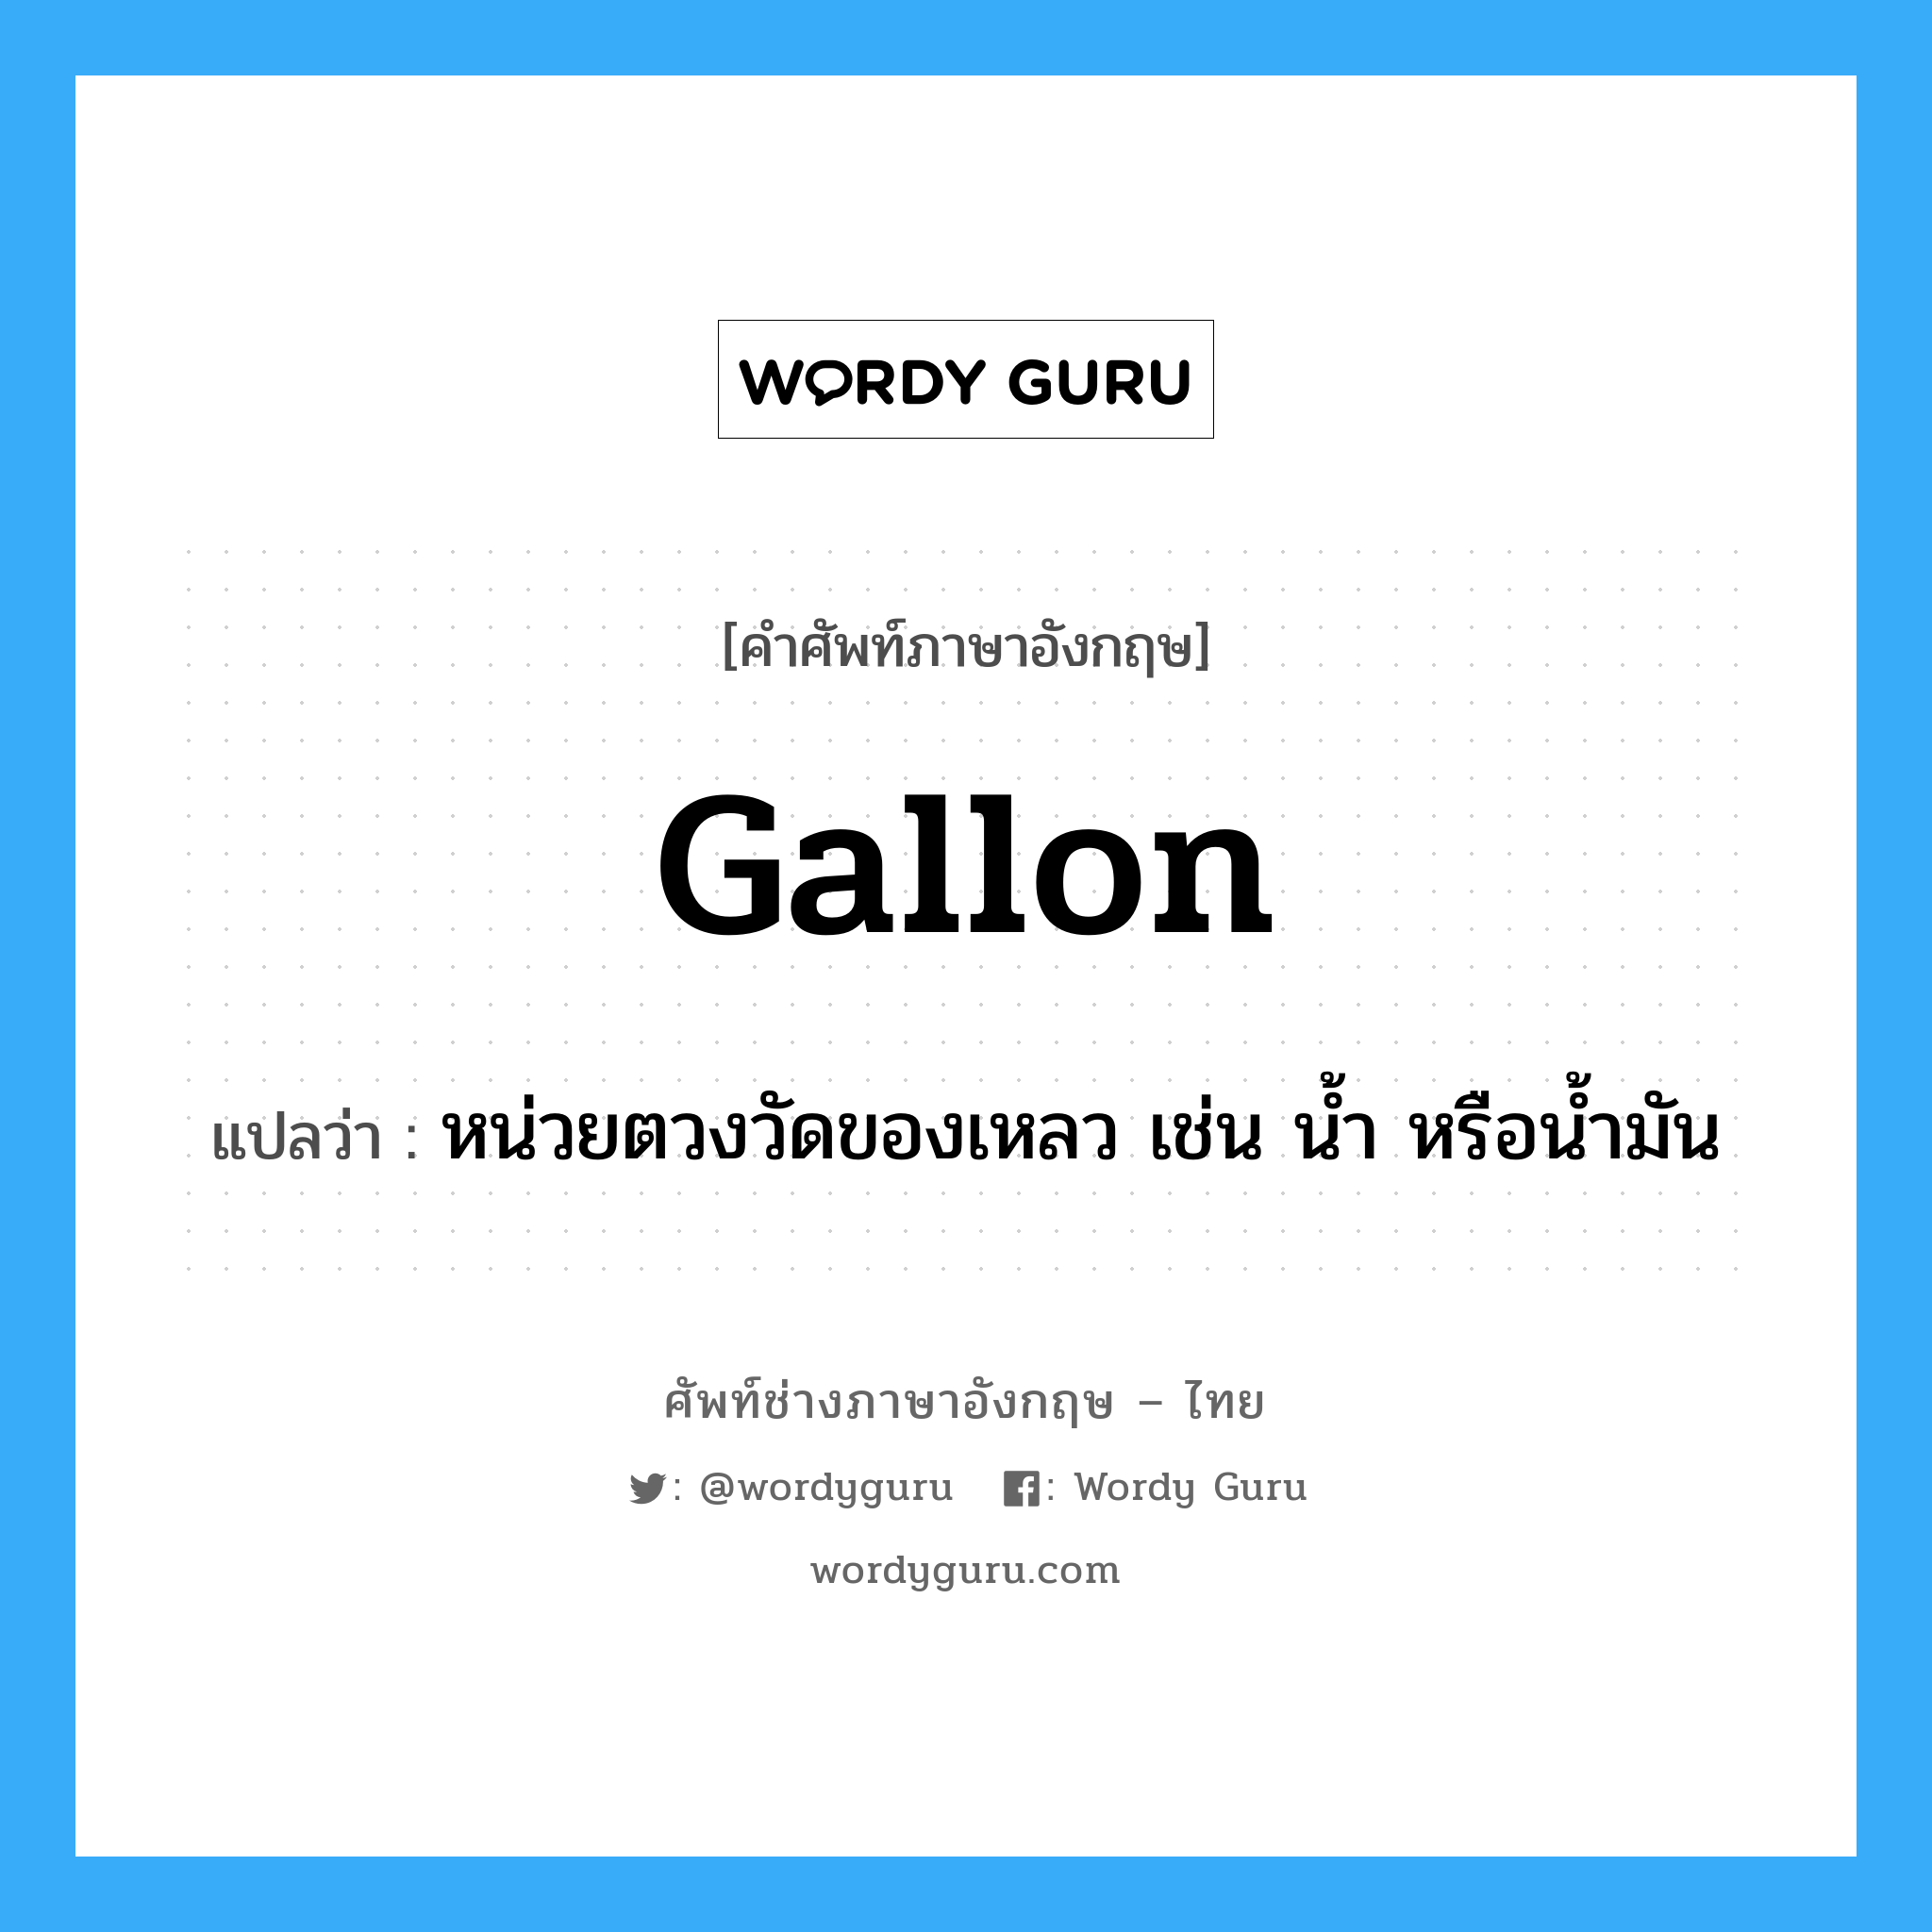 gallon แปลว่า?, คำศัพท์ช่างภาษาอังกฤษ - ไทย gallon คำศัพท์ภาษาอังกฤษ gallon แปลว่า หน่วยตวงวัดของเหลว เช่น น้ำ หรือน้ำมัน